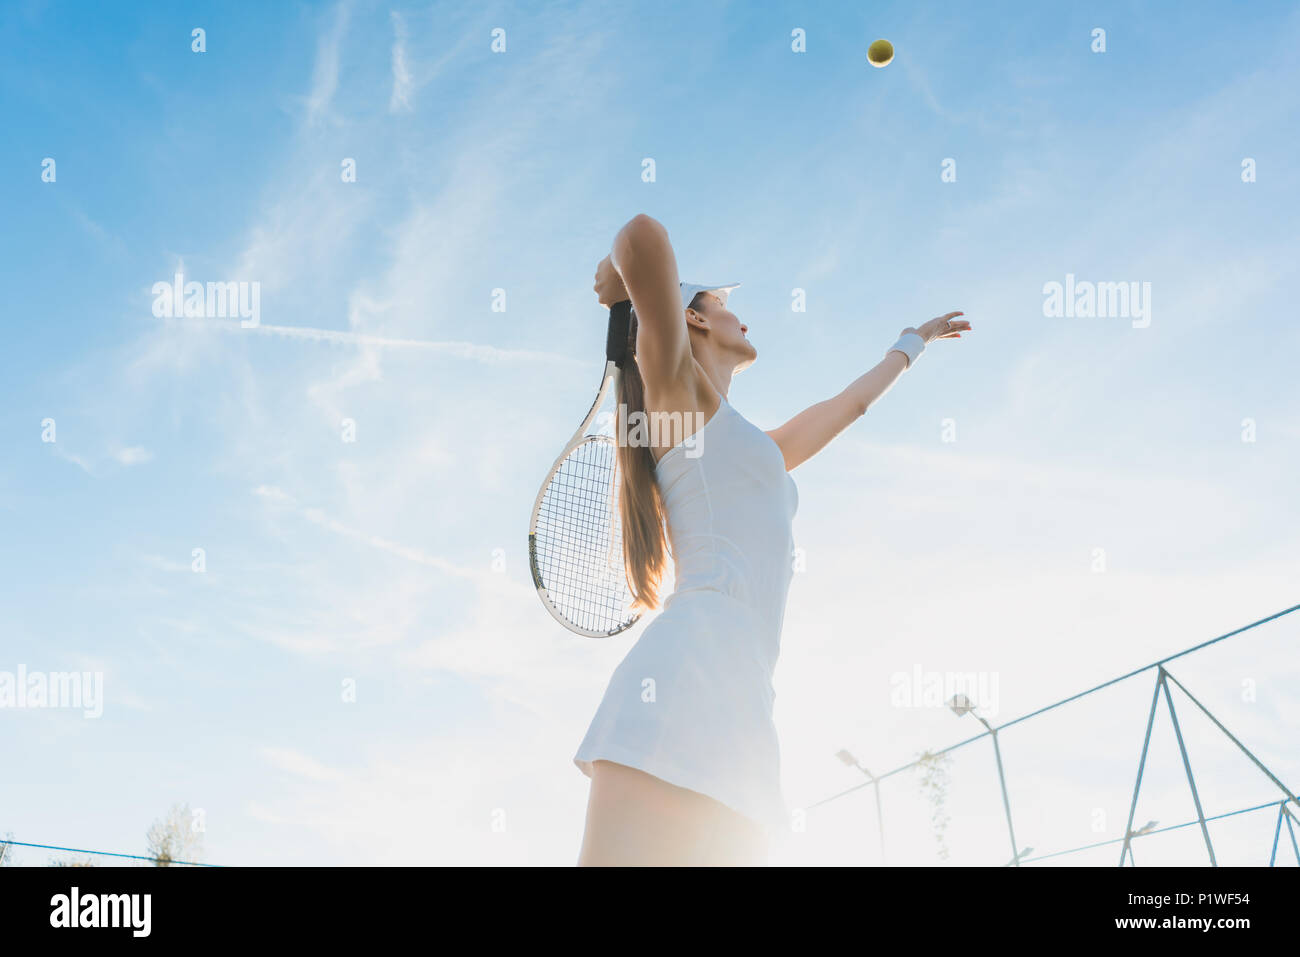 Mujer sirviendo la pelota para jugar un partido de tenis en la cancha Foto de stock